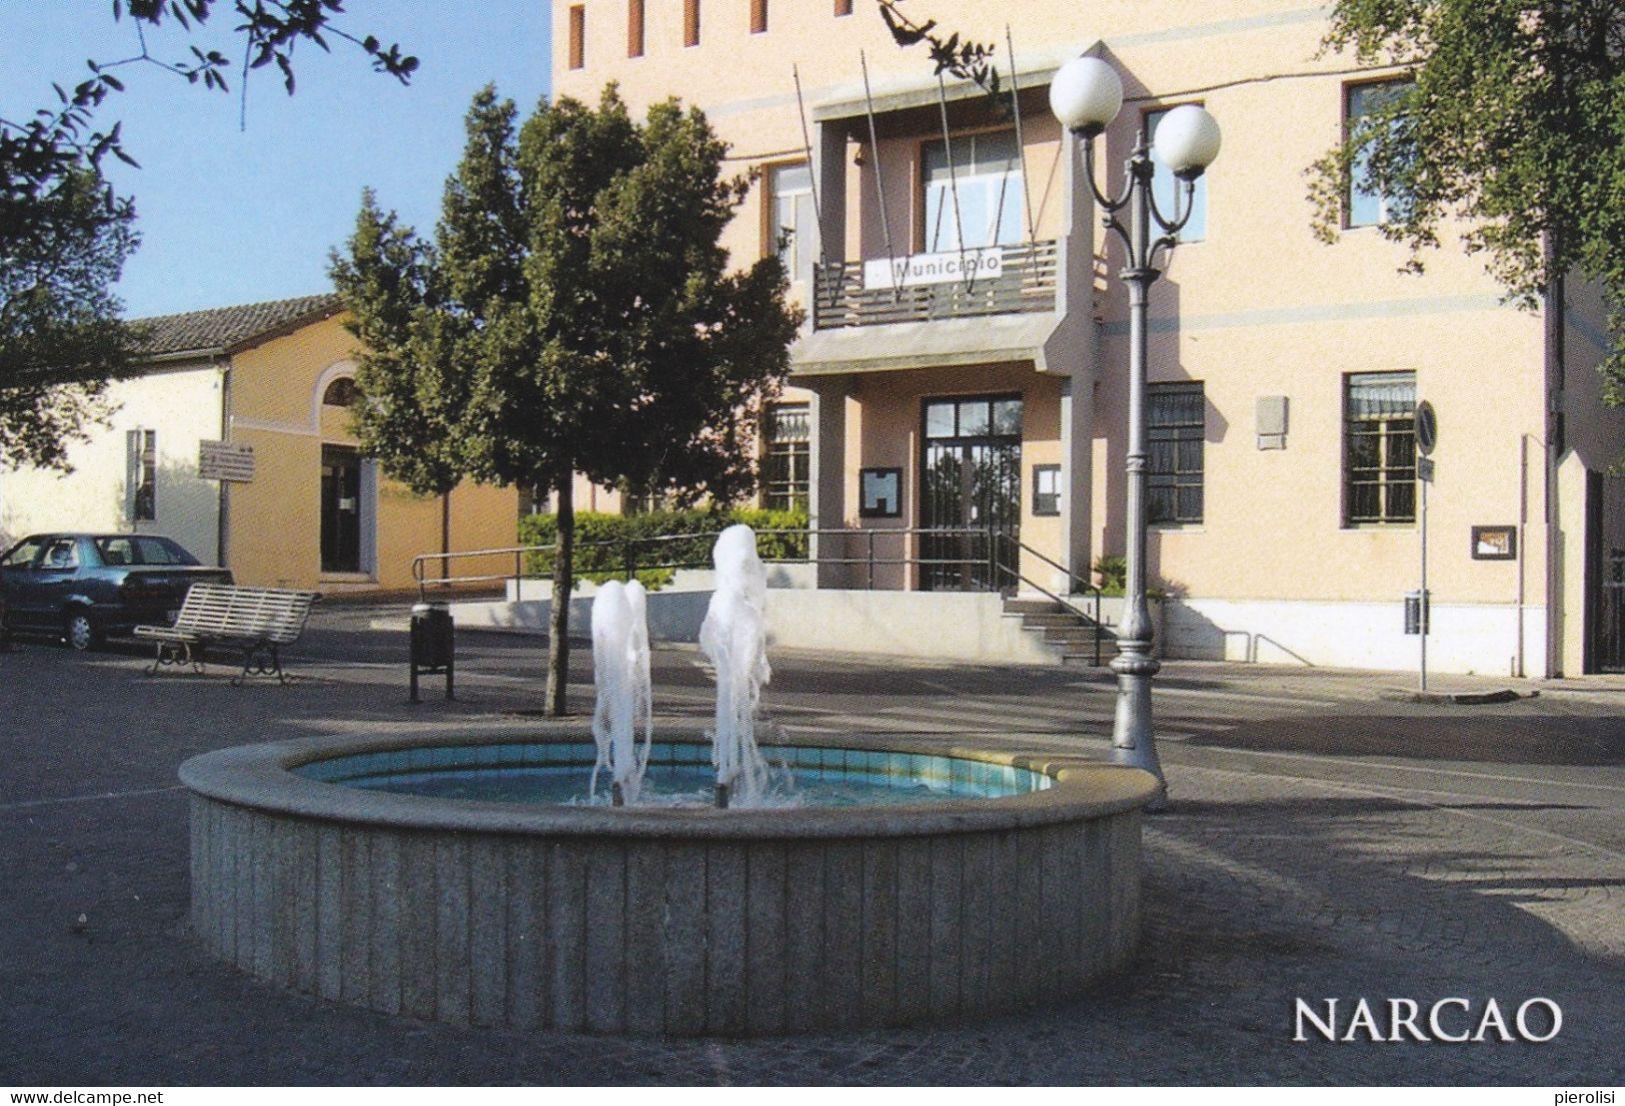 (QU040) - NARCAO (Carbonia-Iglesias) - Fontana E Palazzo Municipale - Carbonia